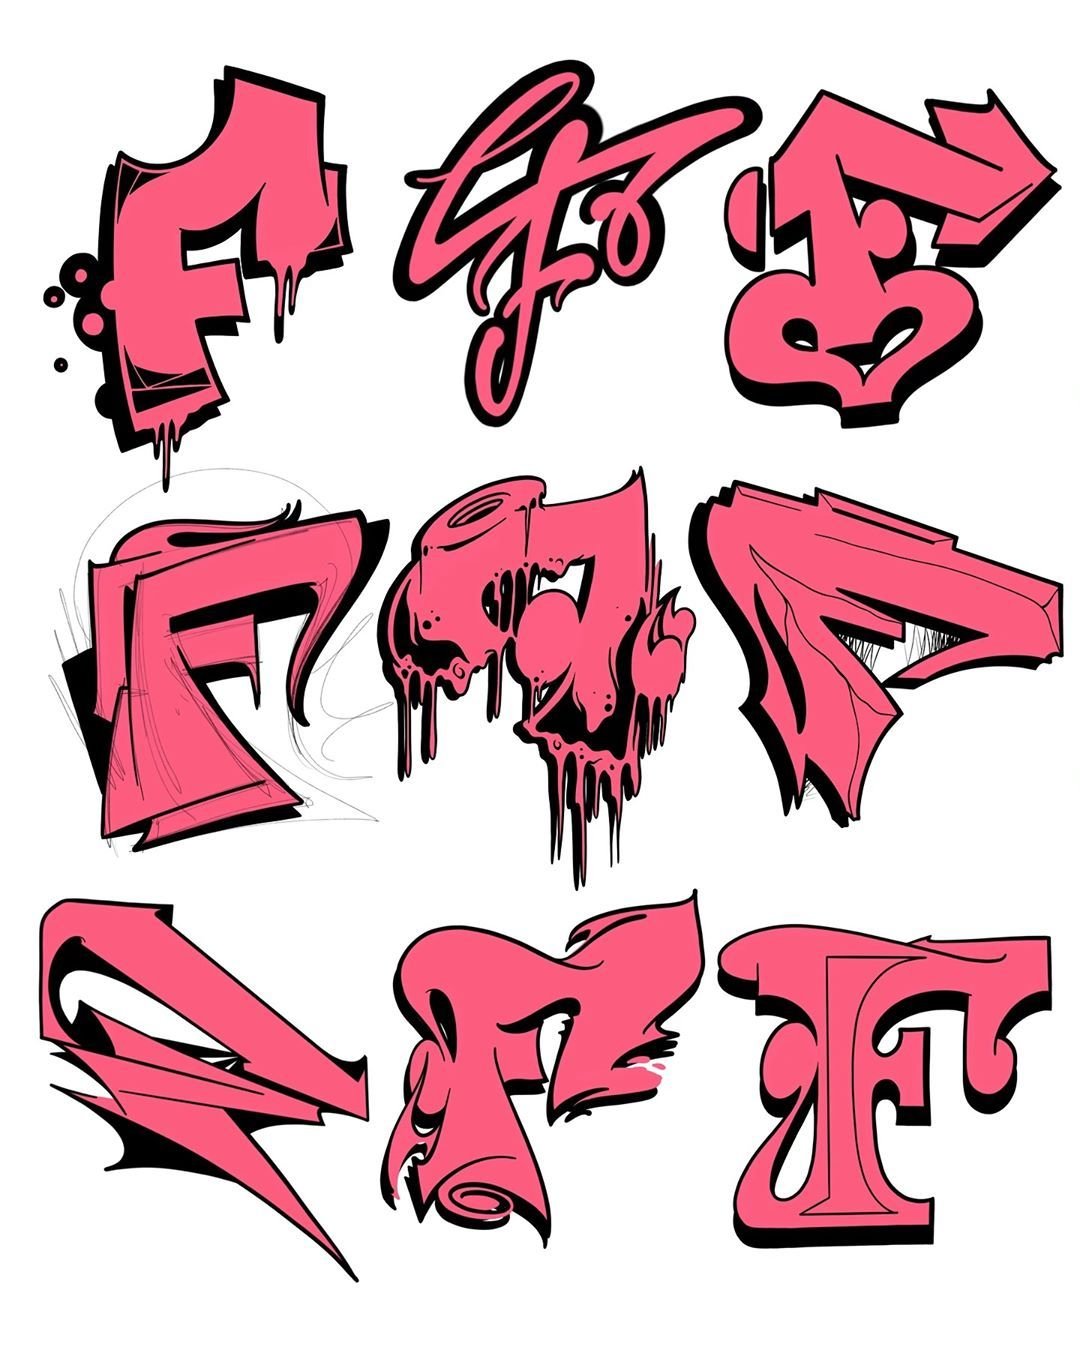 Тег f. Граффити буквы. В стиле граффити. Разные стили граффити. Граффити алфавит.